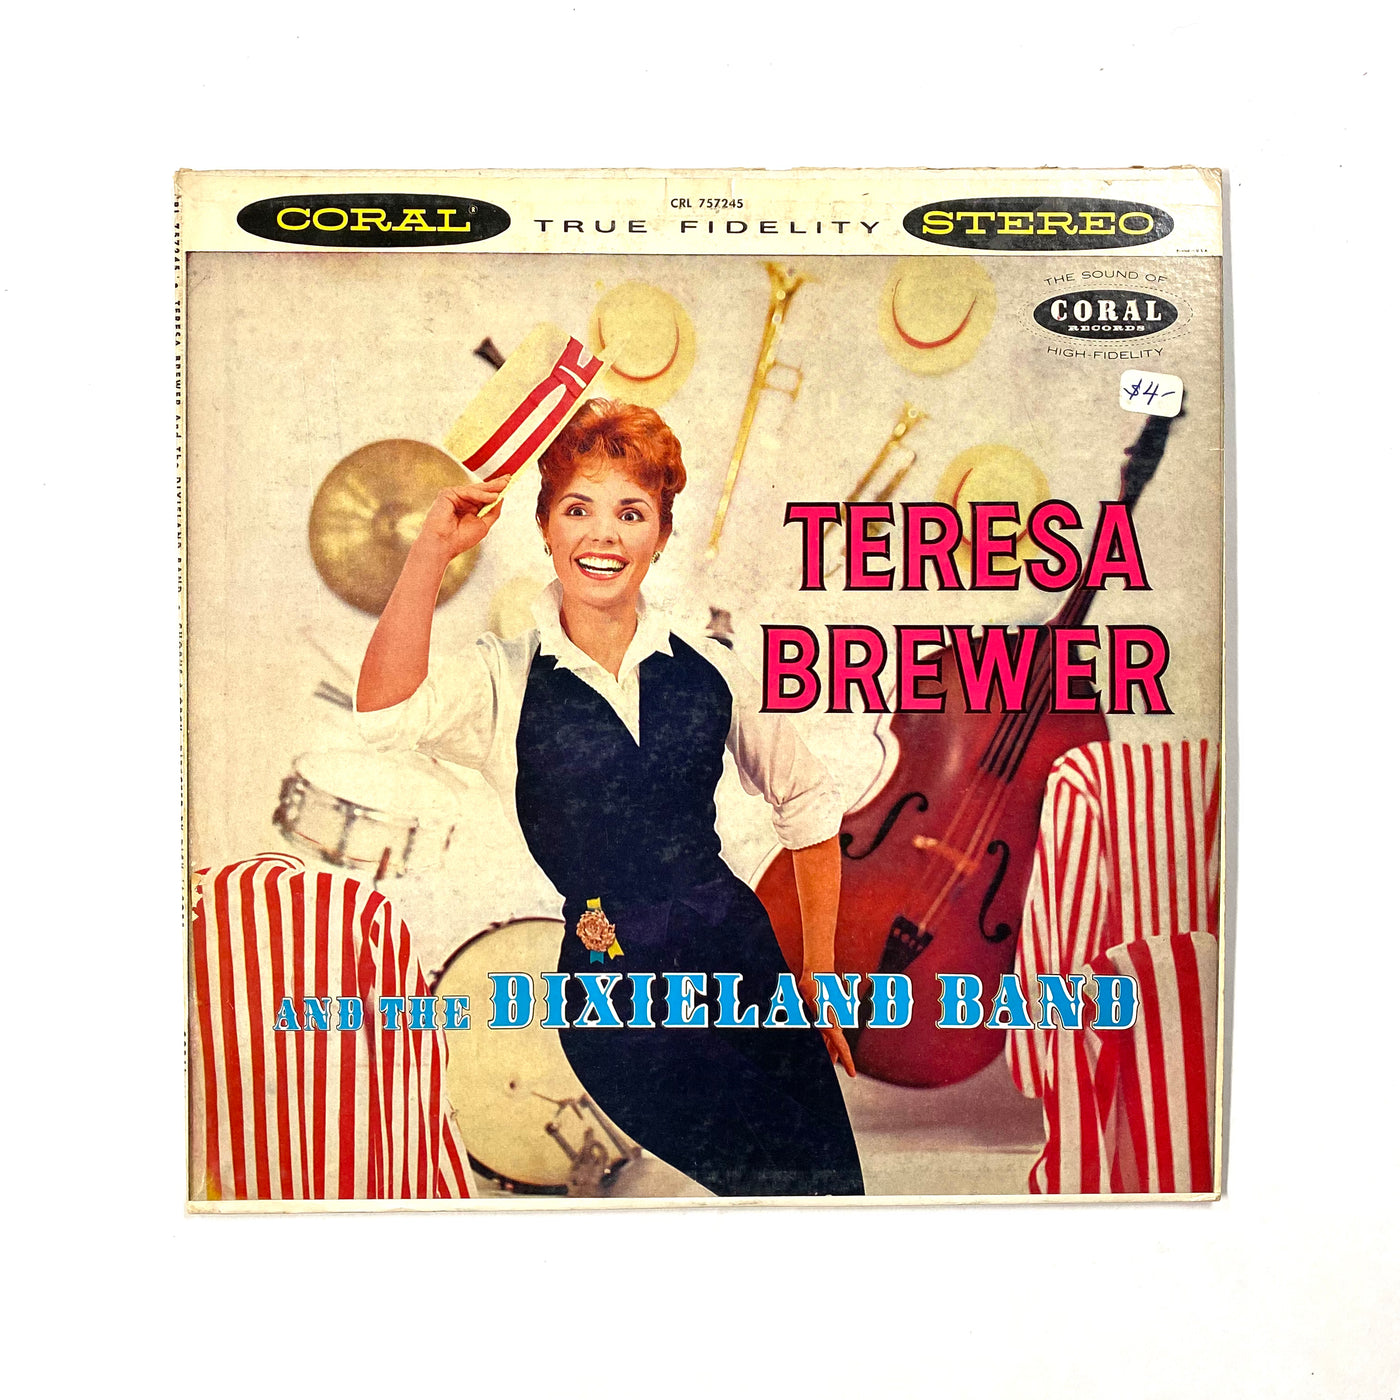 Teresa Brewer And The Dixieland Band - Teresa Brewer And The Dixieland Band